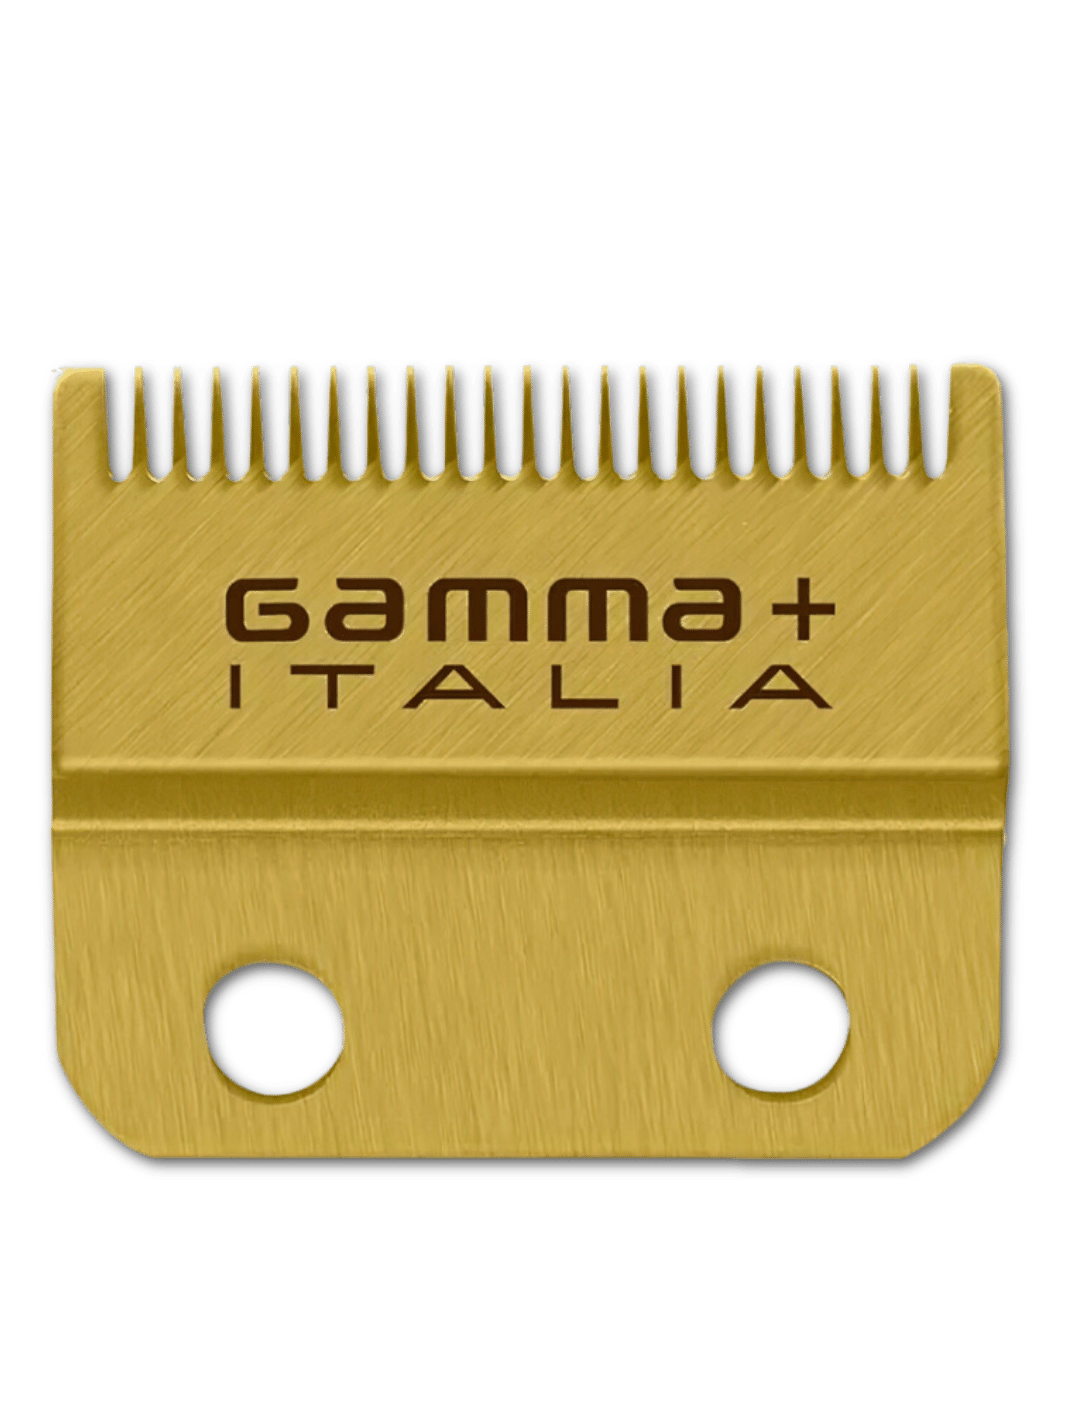 GAMMA+ Fade DLC Blade Gold Ersatzschneidsatz, kompatibel mit Boosted, Ryde, Golden Gun, X-Ergo, Protégé Clipper, Alpha und Cyborg, erhältlich bei Phullcutz.